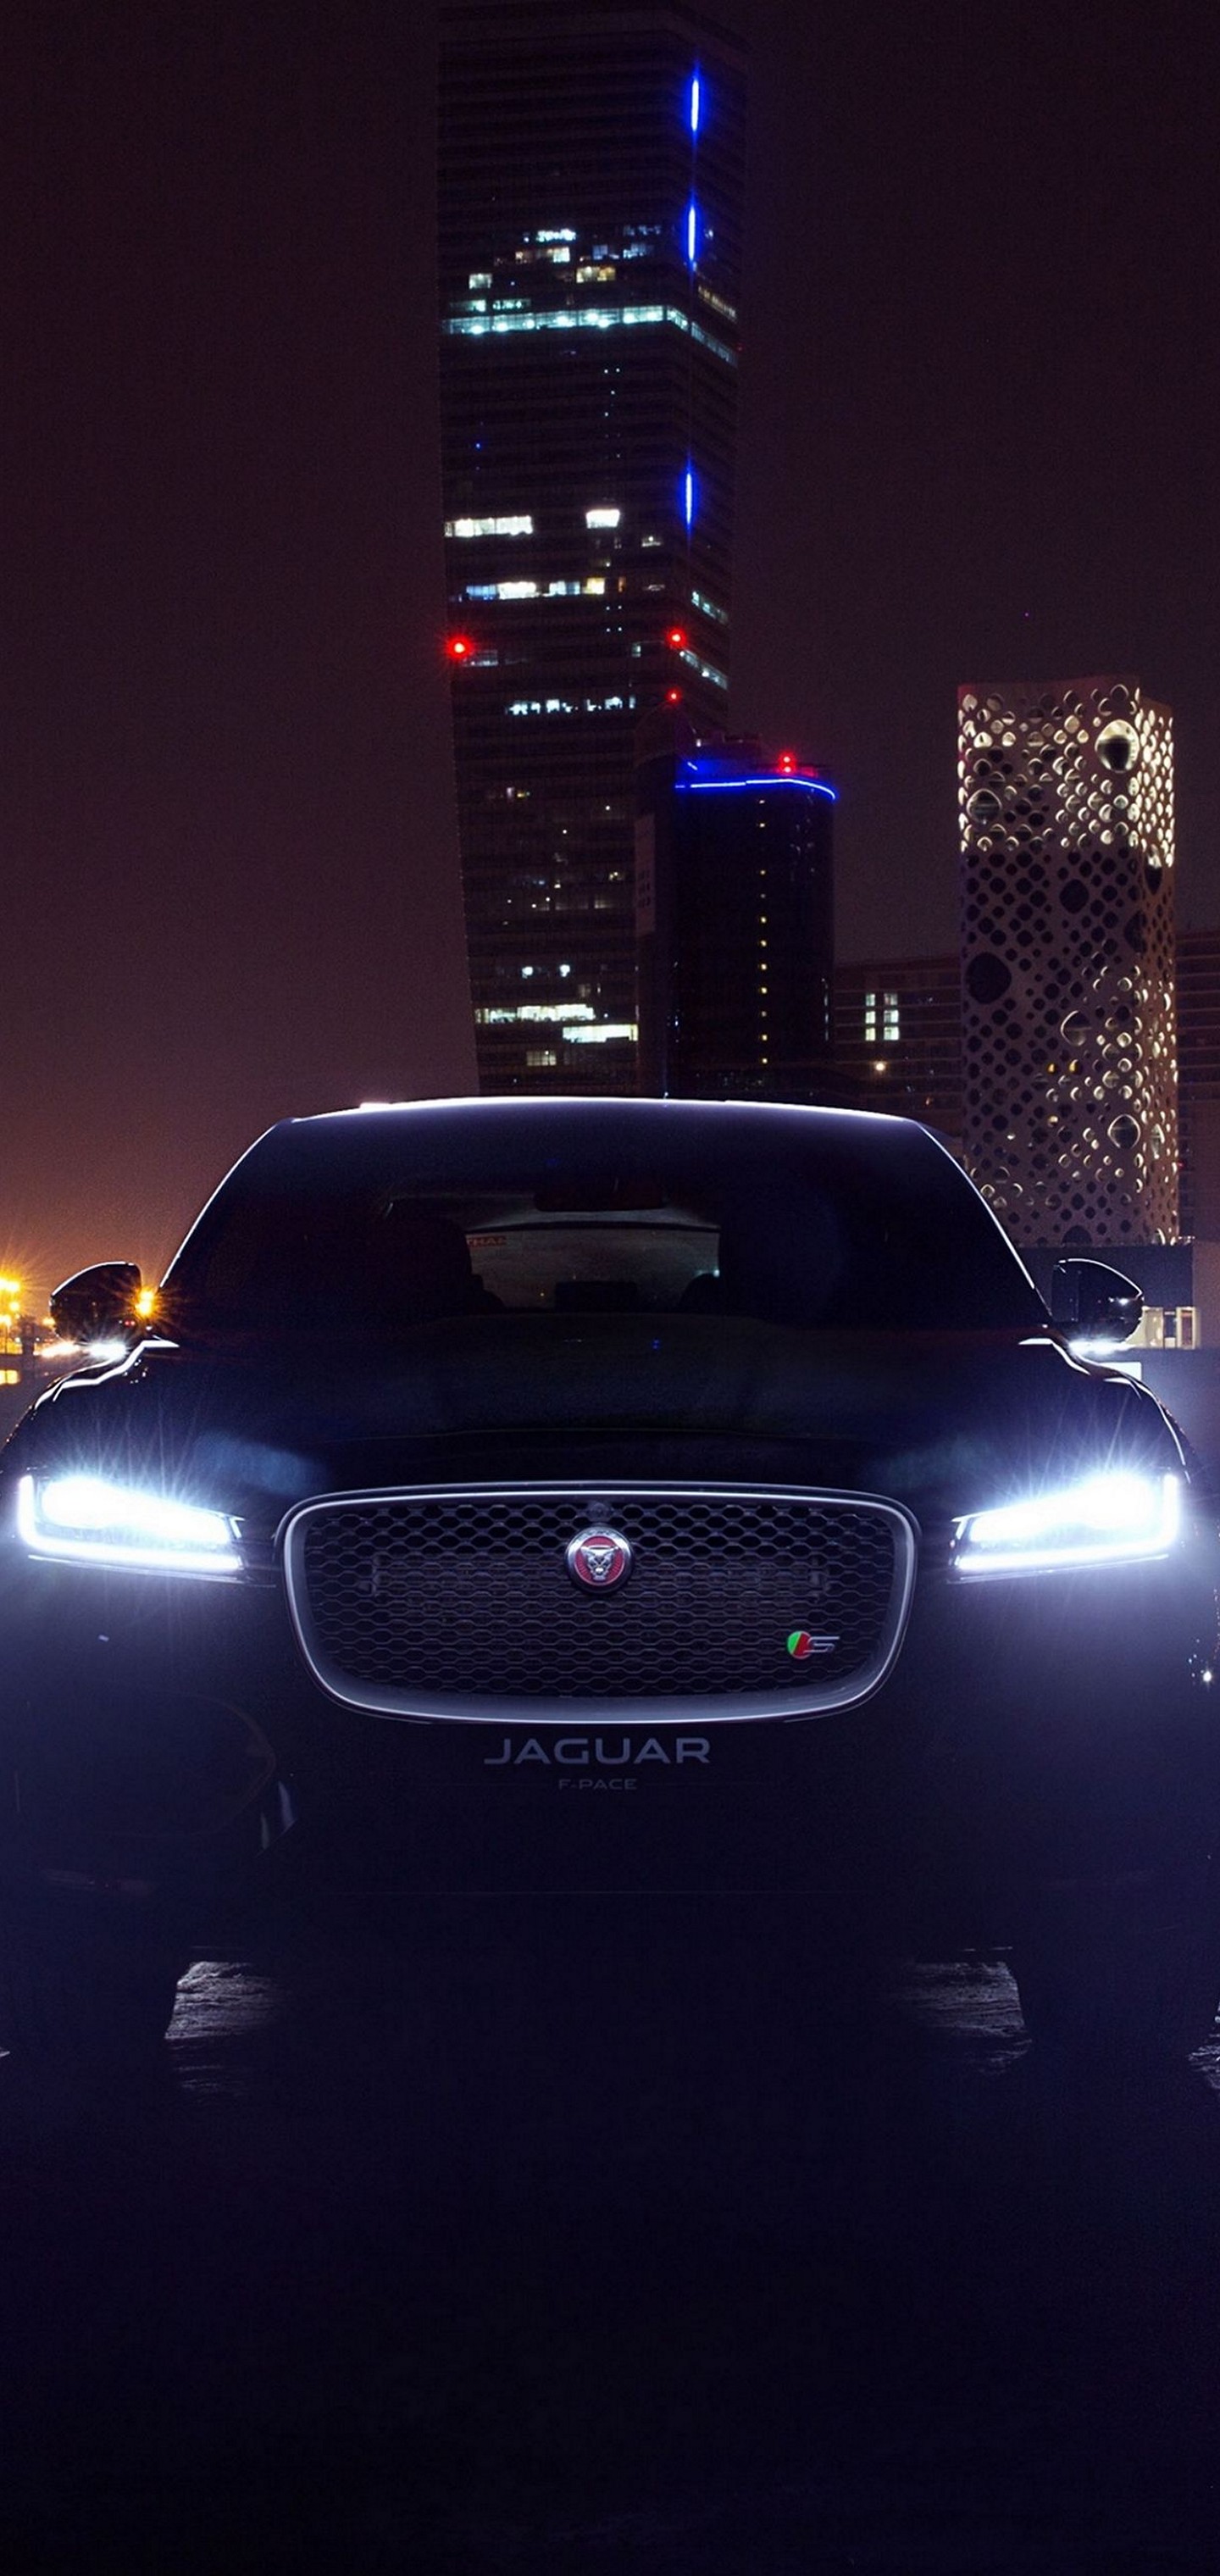 Wallpapers Of Cars Jaguar